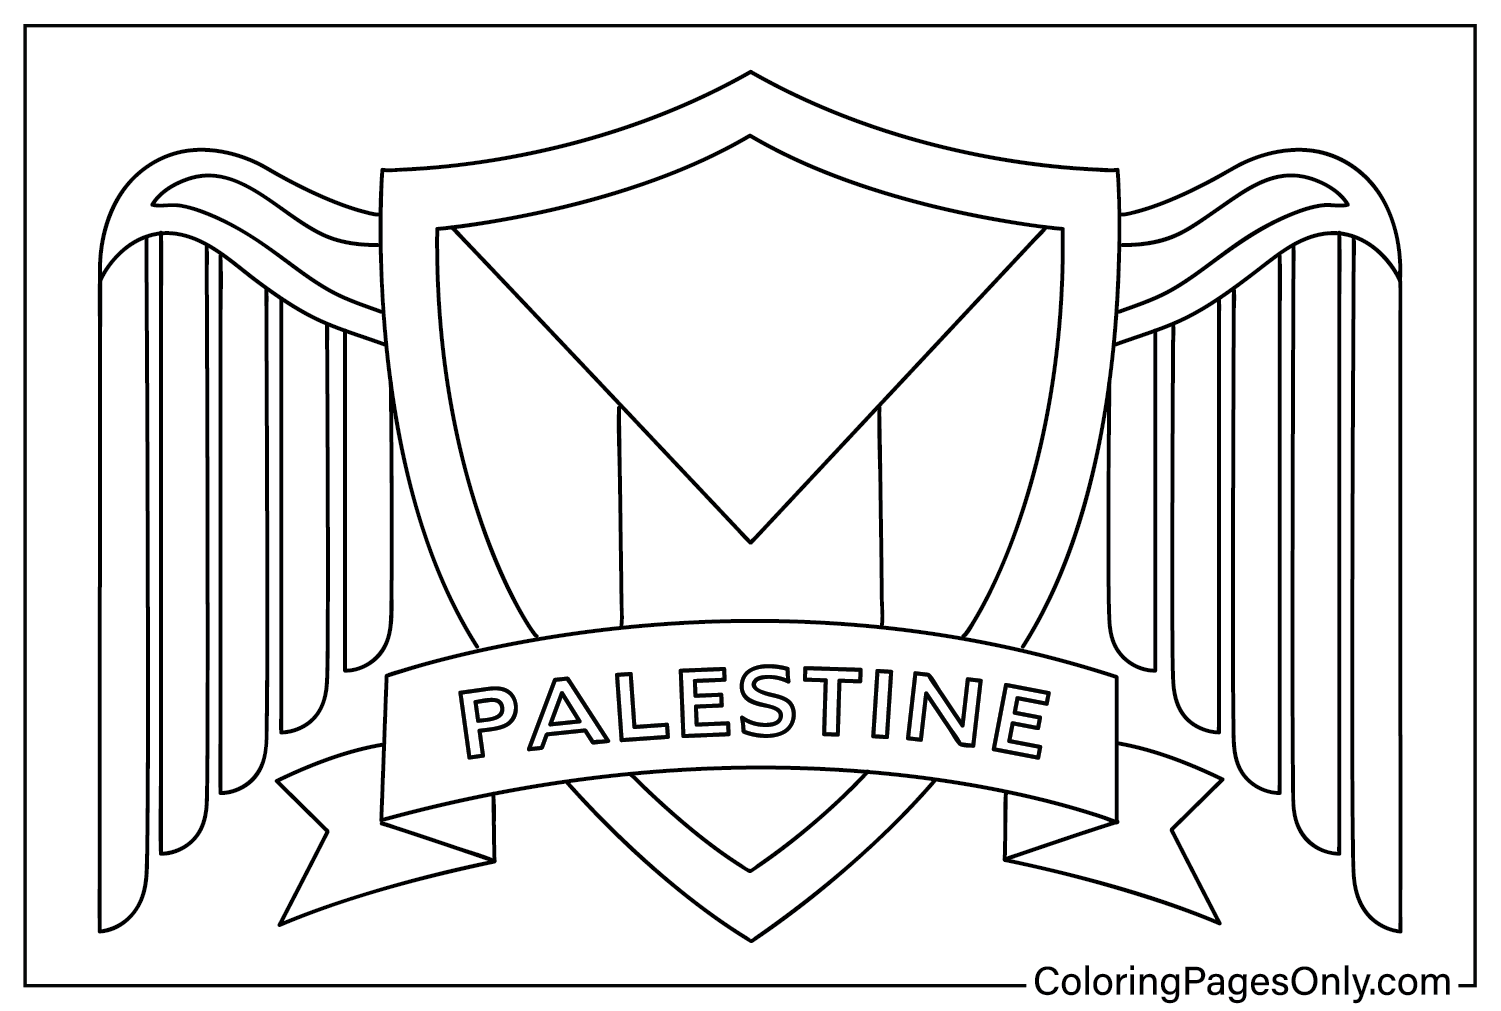 Palästina-Färbung aus Palästina